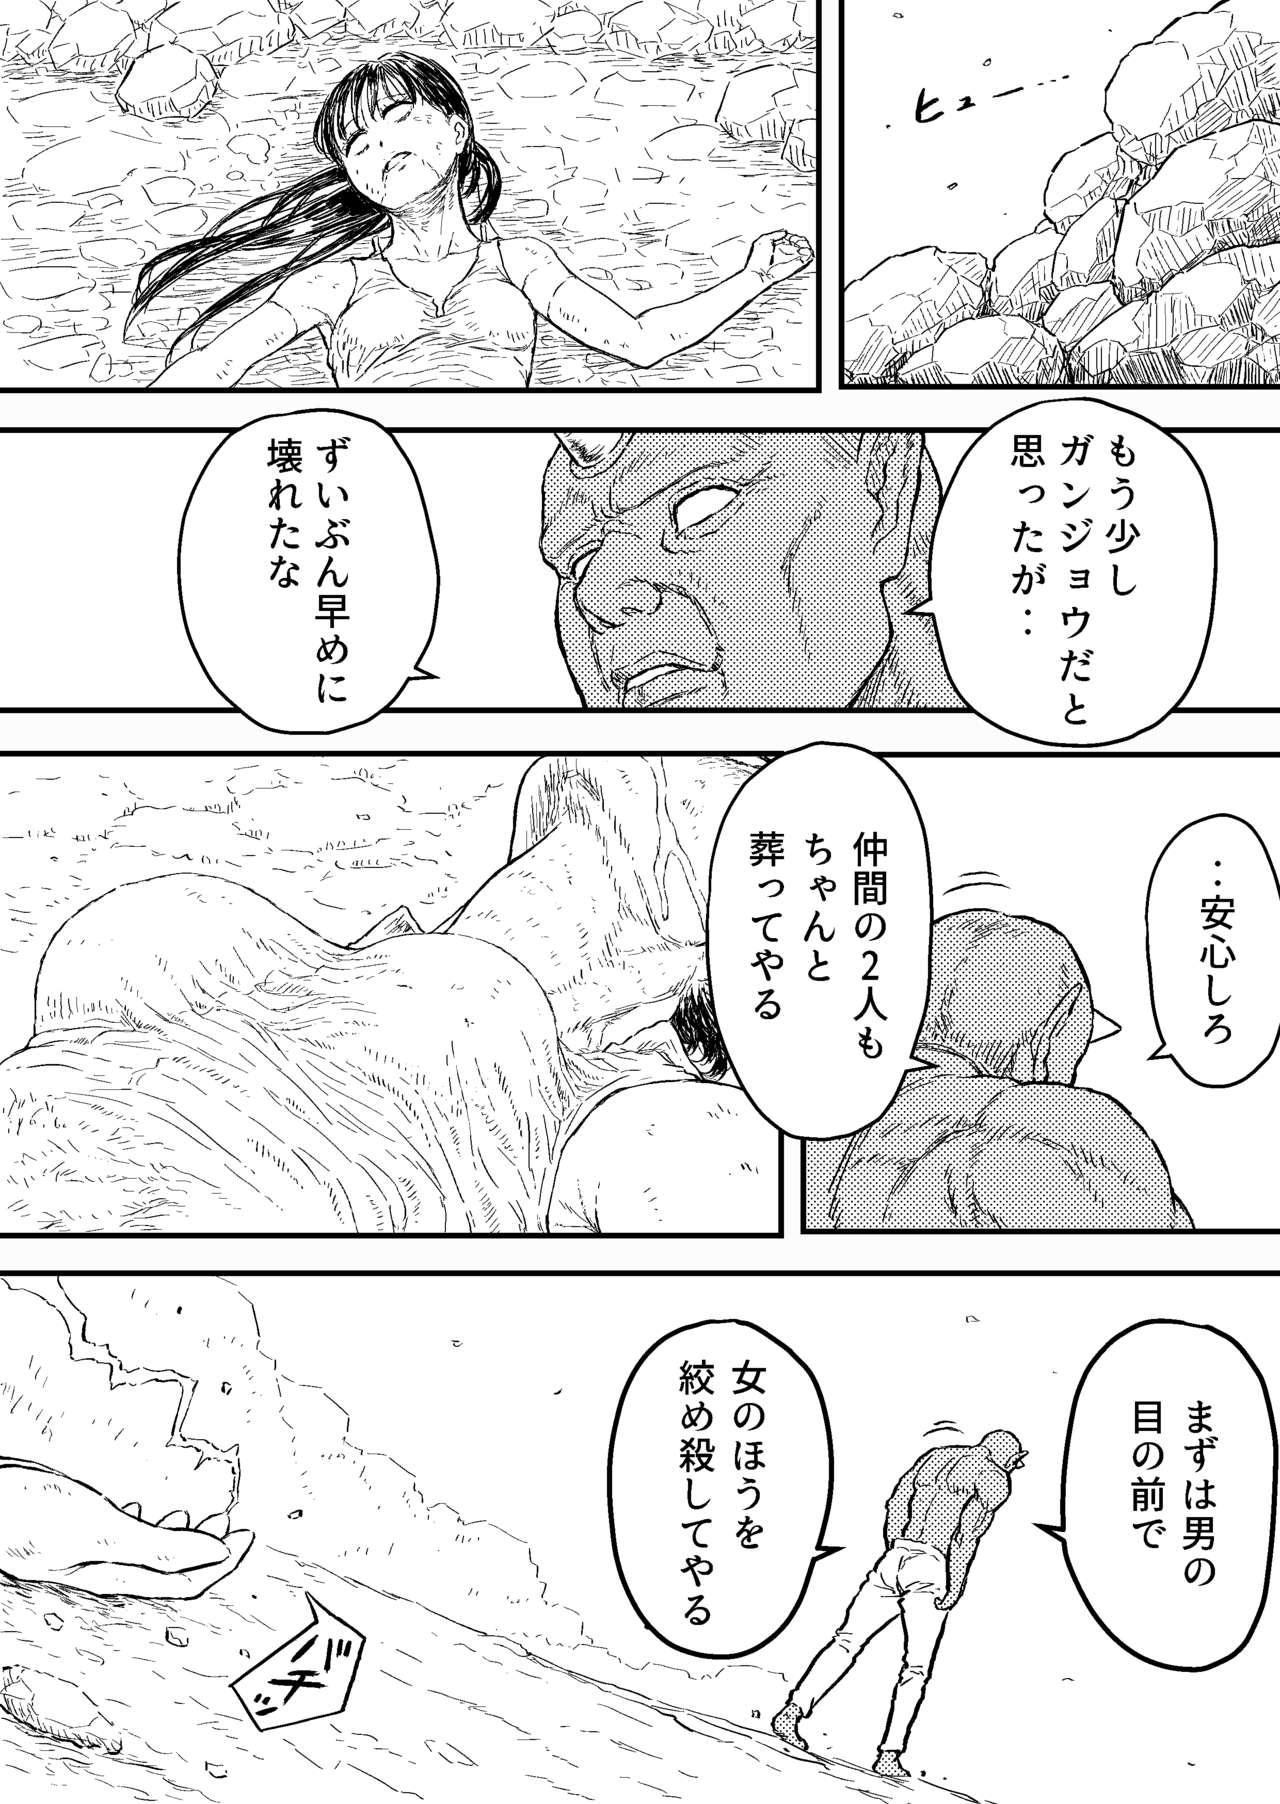 Spycam Sutoranguru Gold 4 『Seigi no hiroin kosatsu subete o kake te tataka ta shojo no unmei』 - Original Fist - Page 2